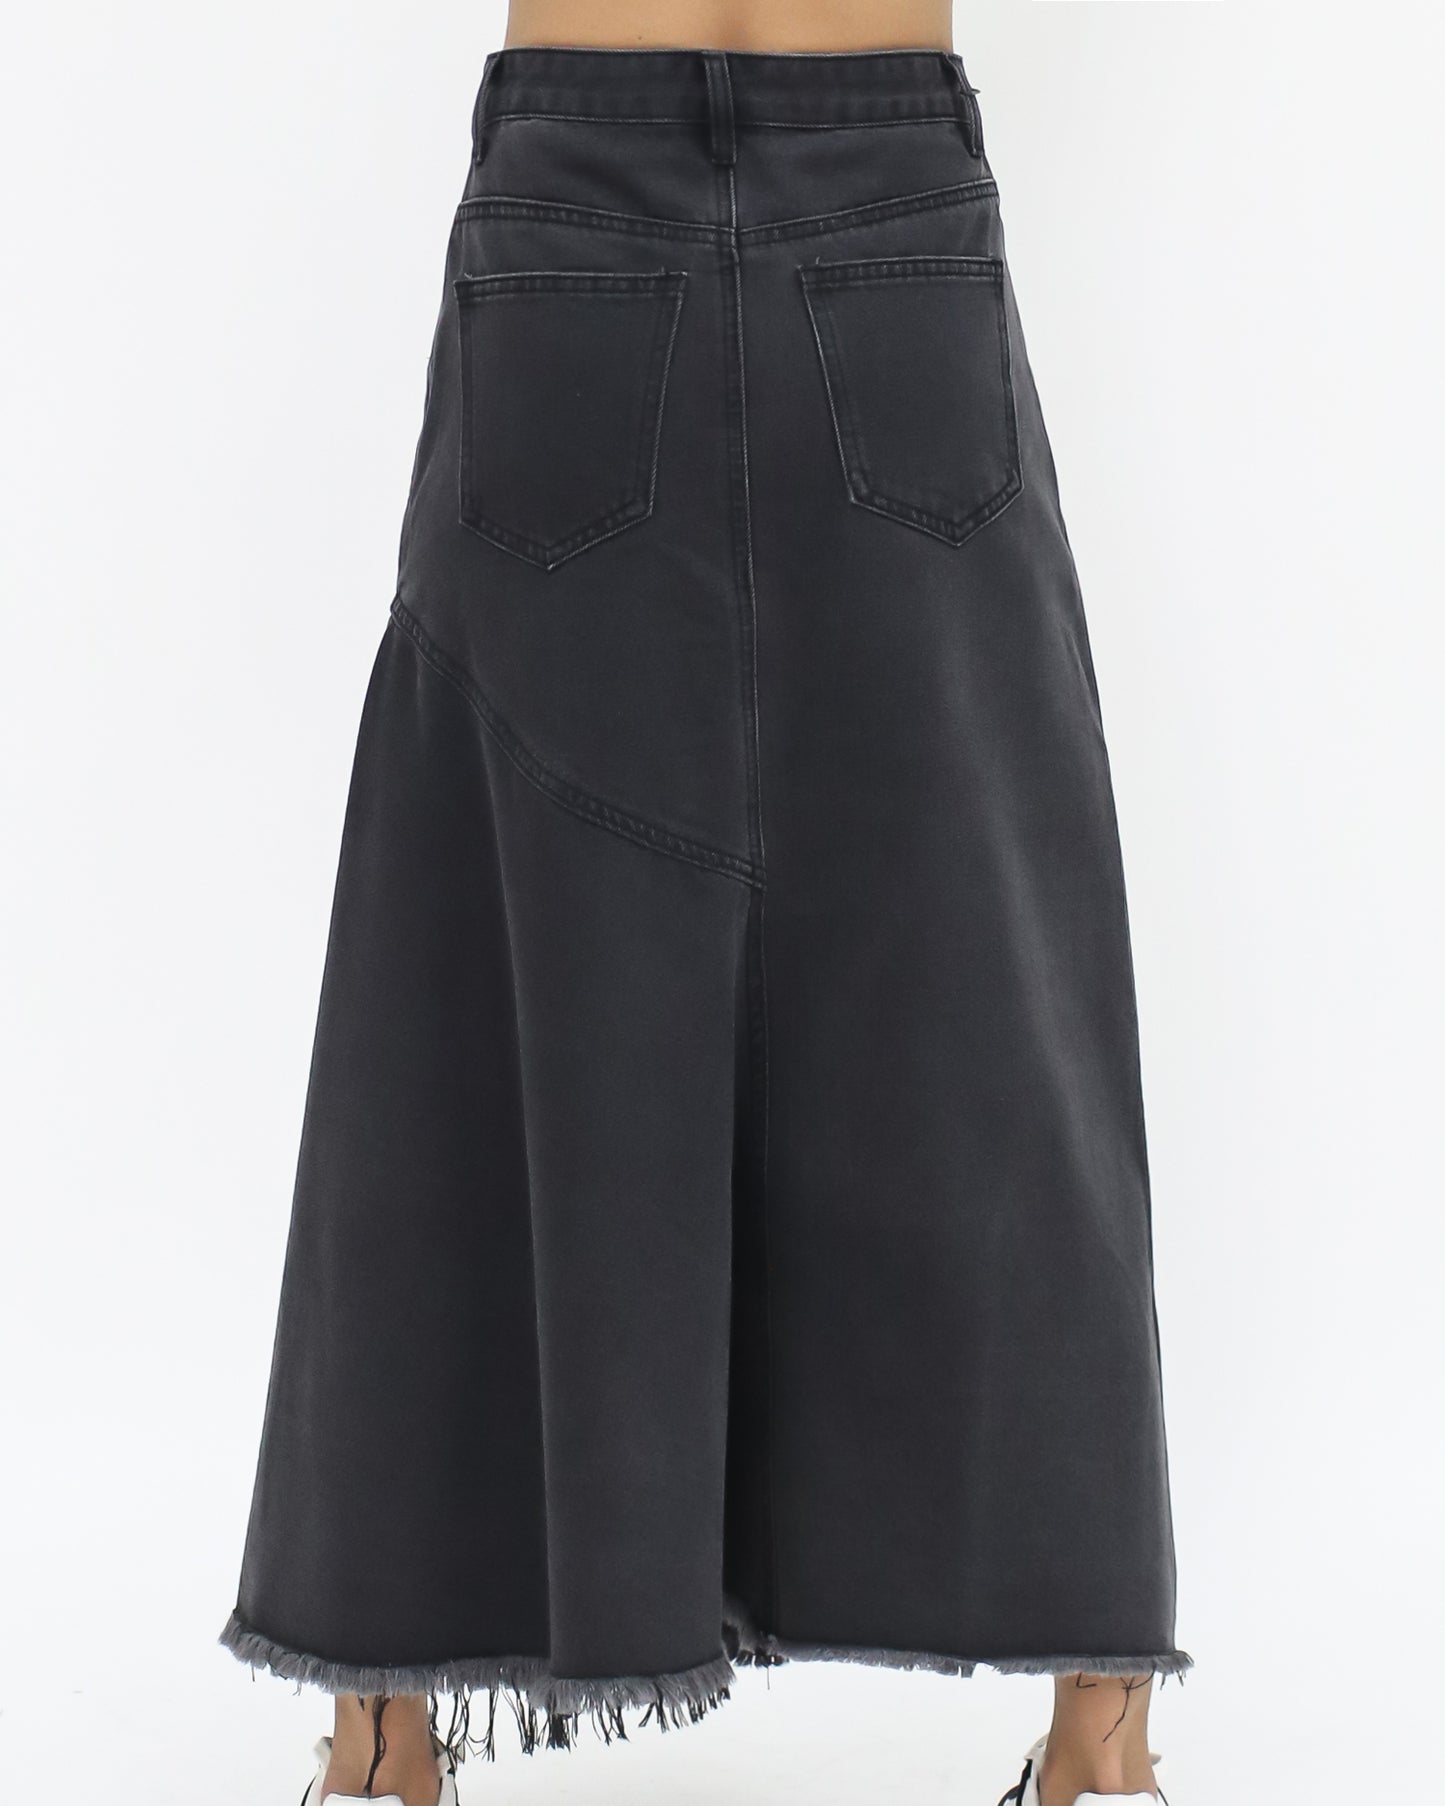 washed denim black frill skirt *pre-order*